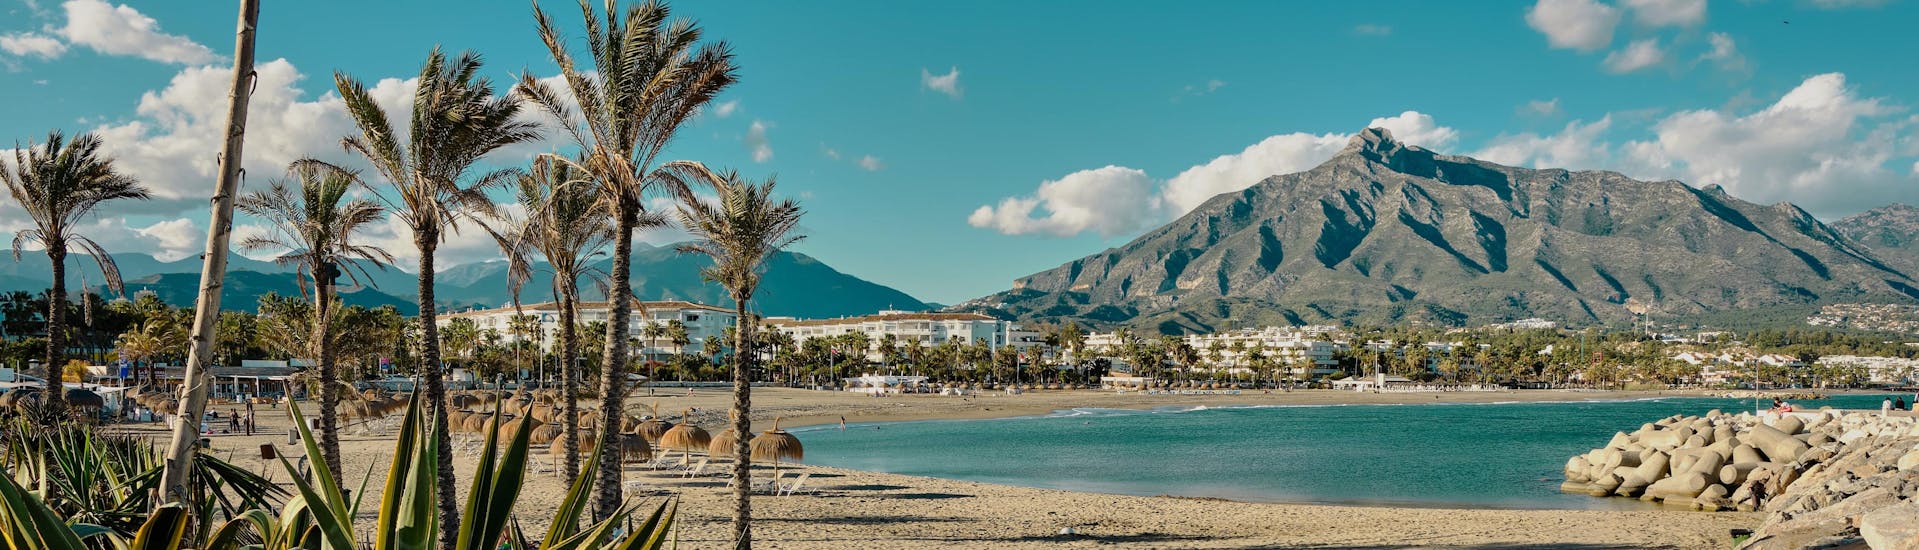 Blick auf den Strand von Marbella, Spanien, einem beliebten Urlaubsziel. 